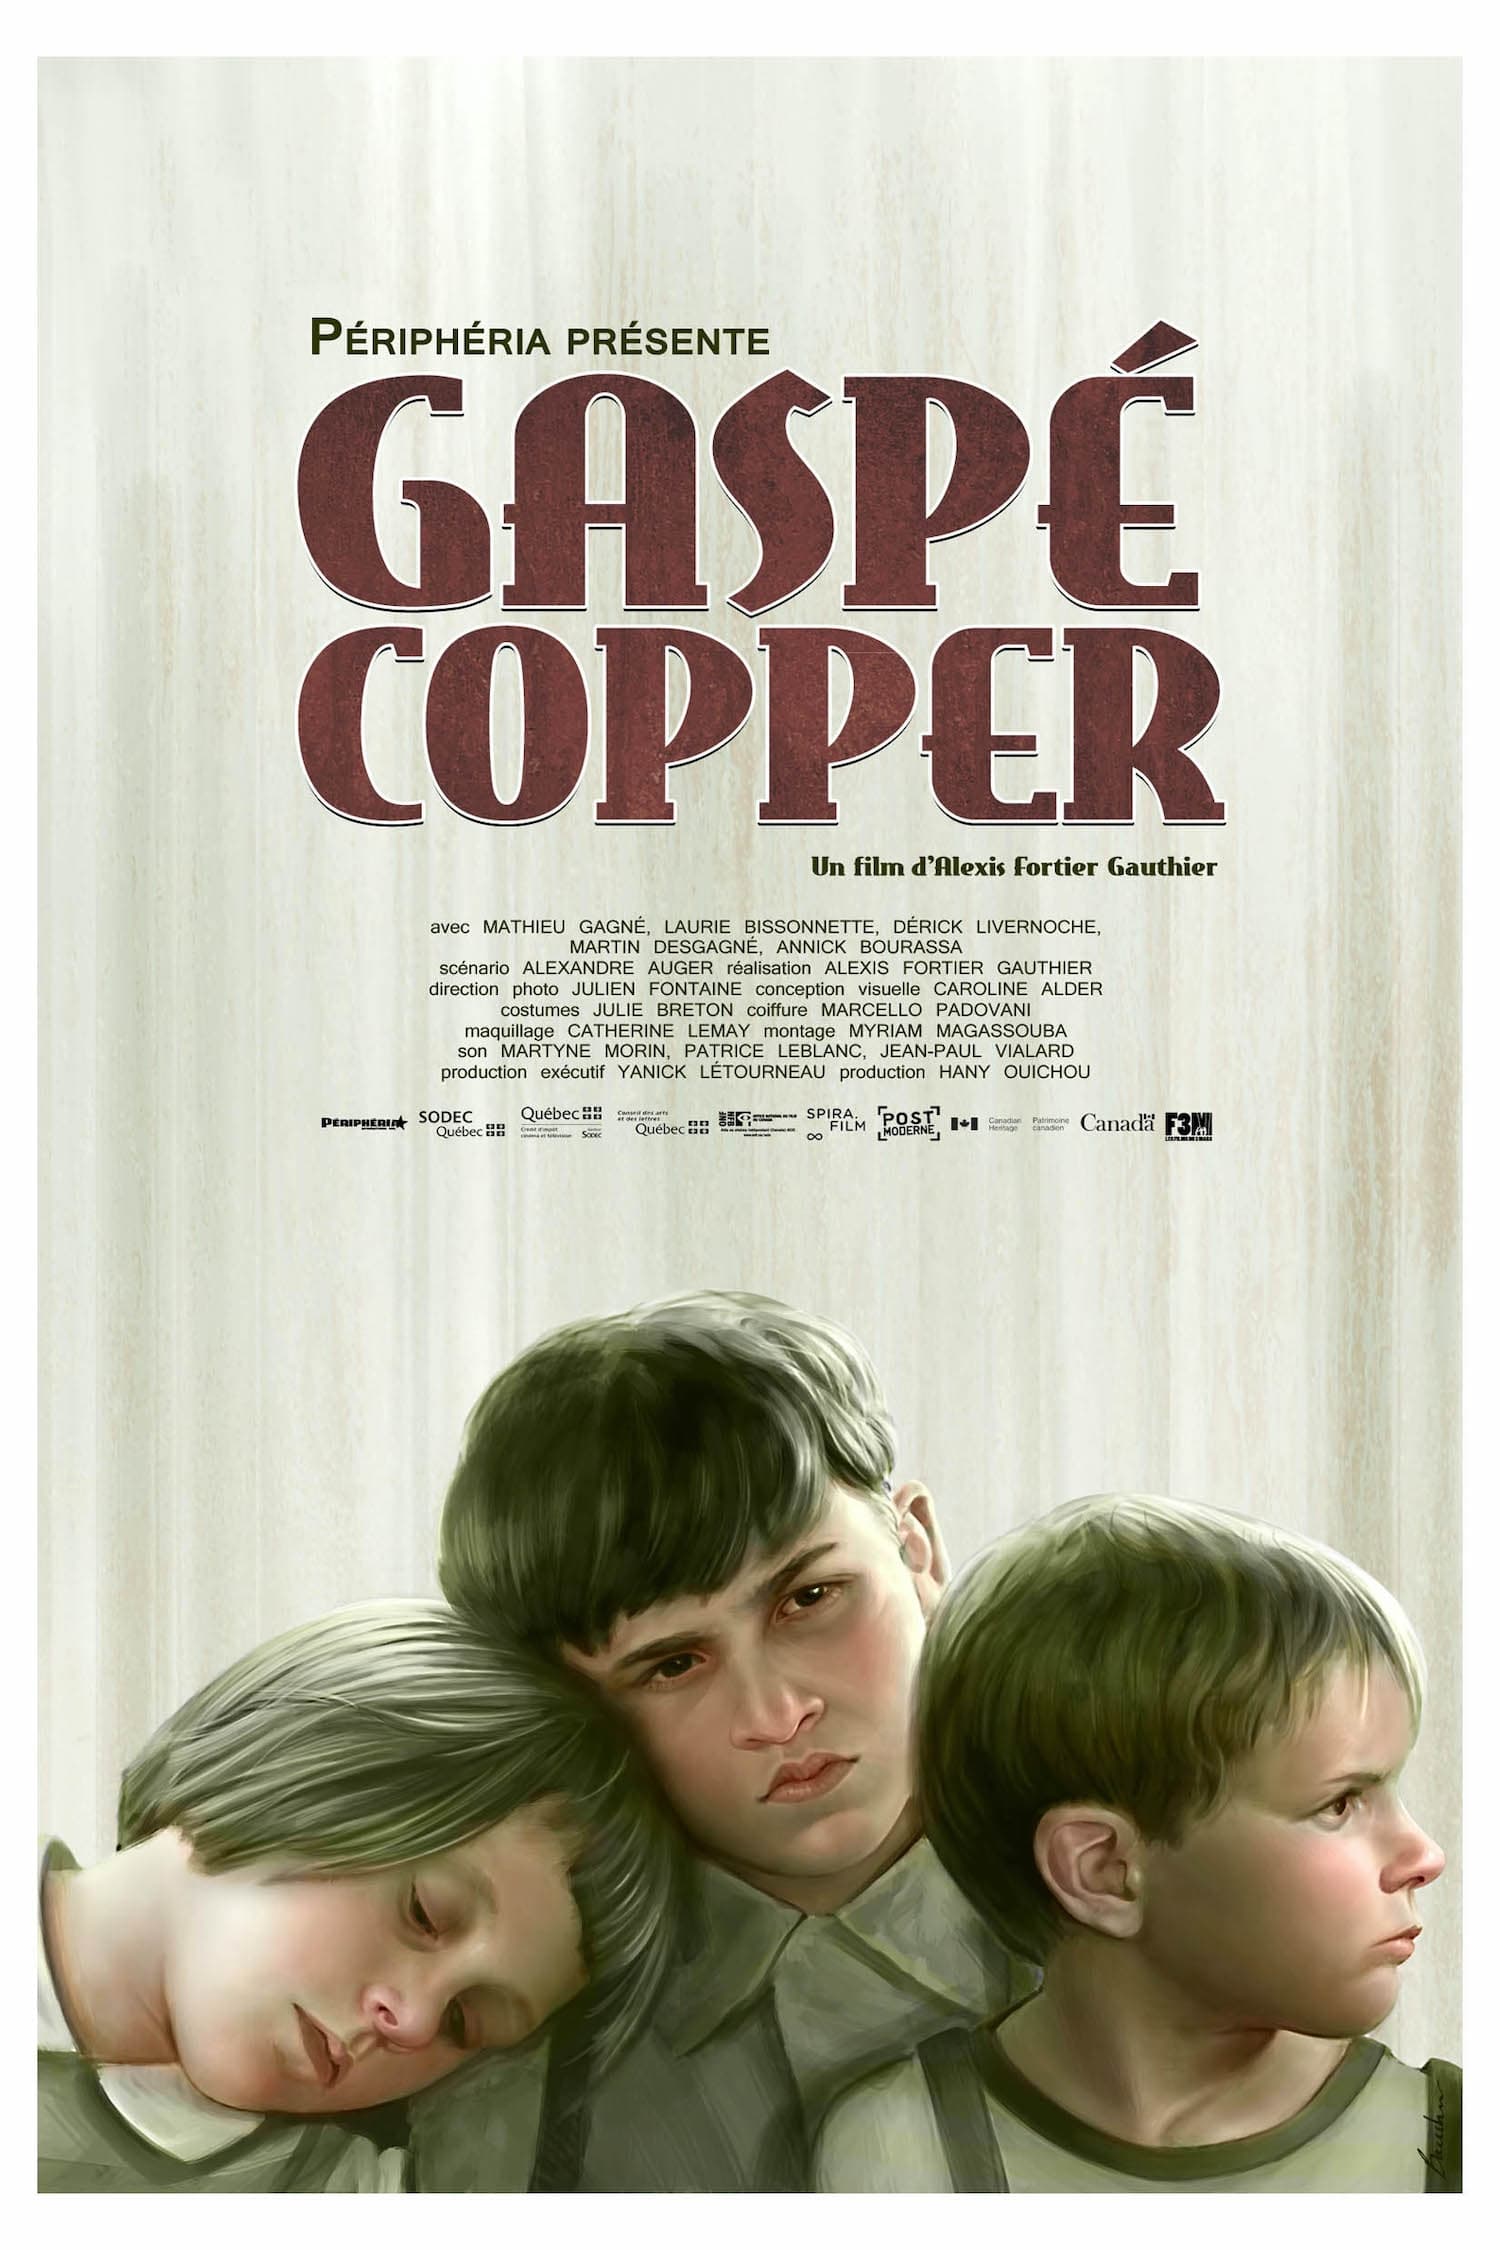 Gaspe Copper